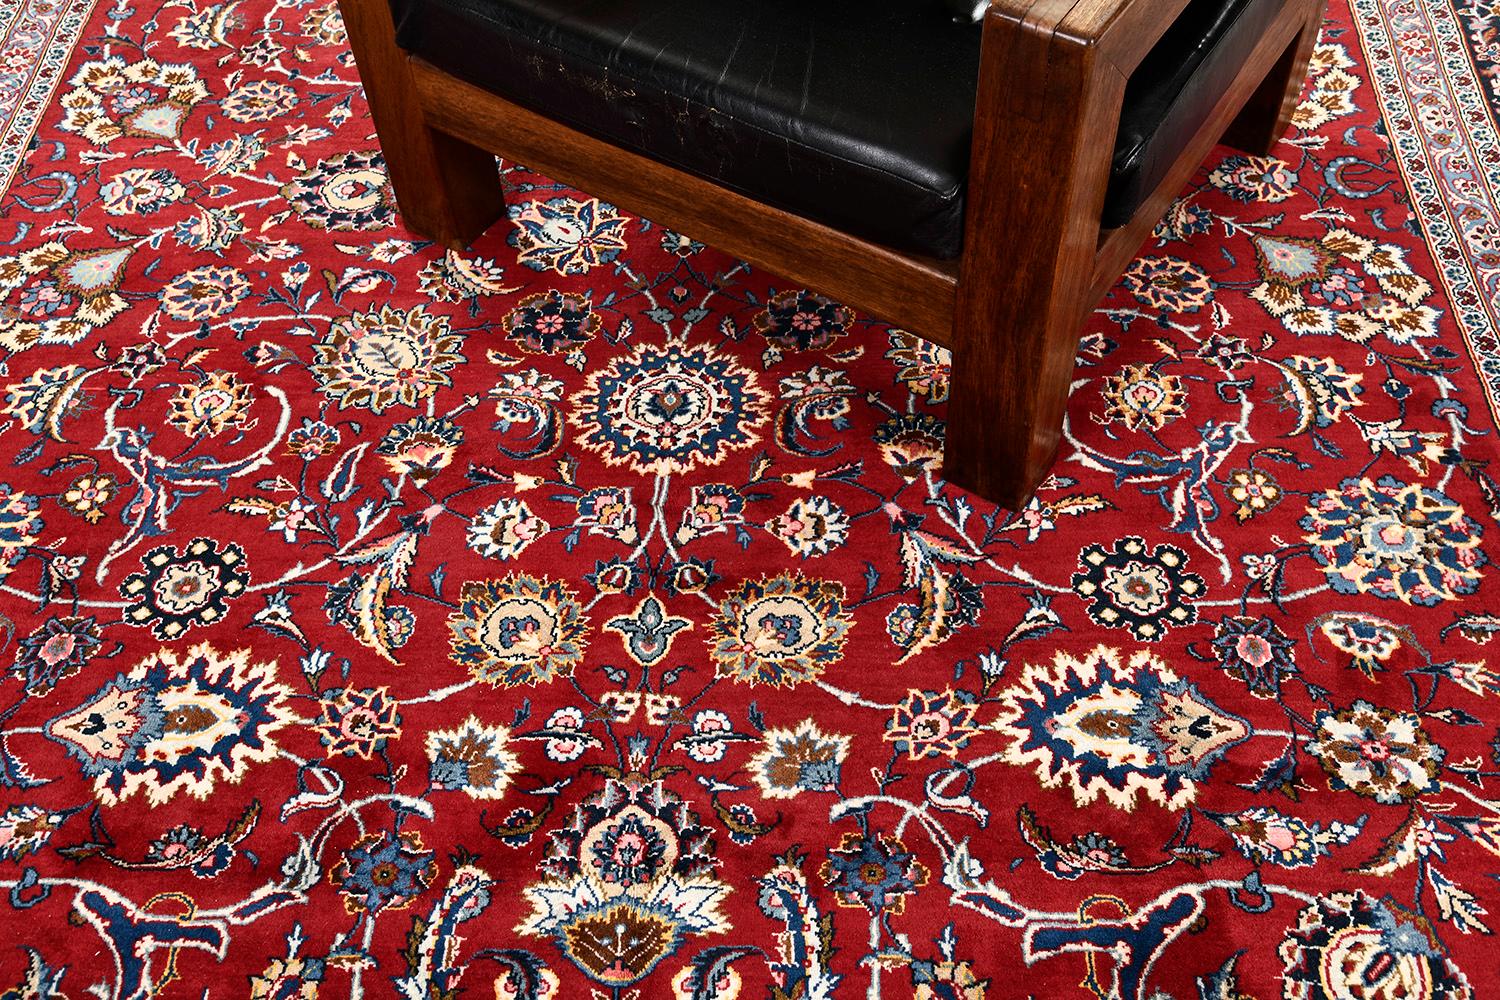 Eine bemerkenswerte Kreation des Kashan-Teppichs, der durch sein Design eine große Wirkung entfaltet. In seinem Kern präsentiert es majestätisch ein detailliertes, symmetrisches Blumenthema, Motive und Blattrollen. Eine mühelose Kombination